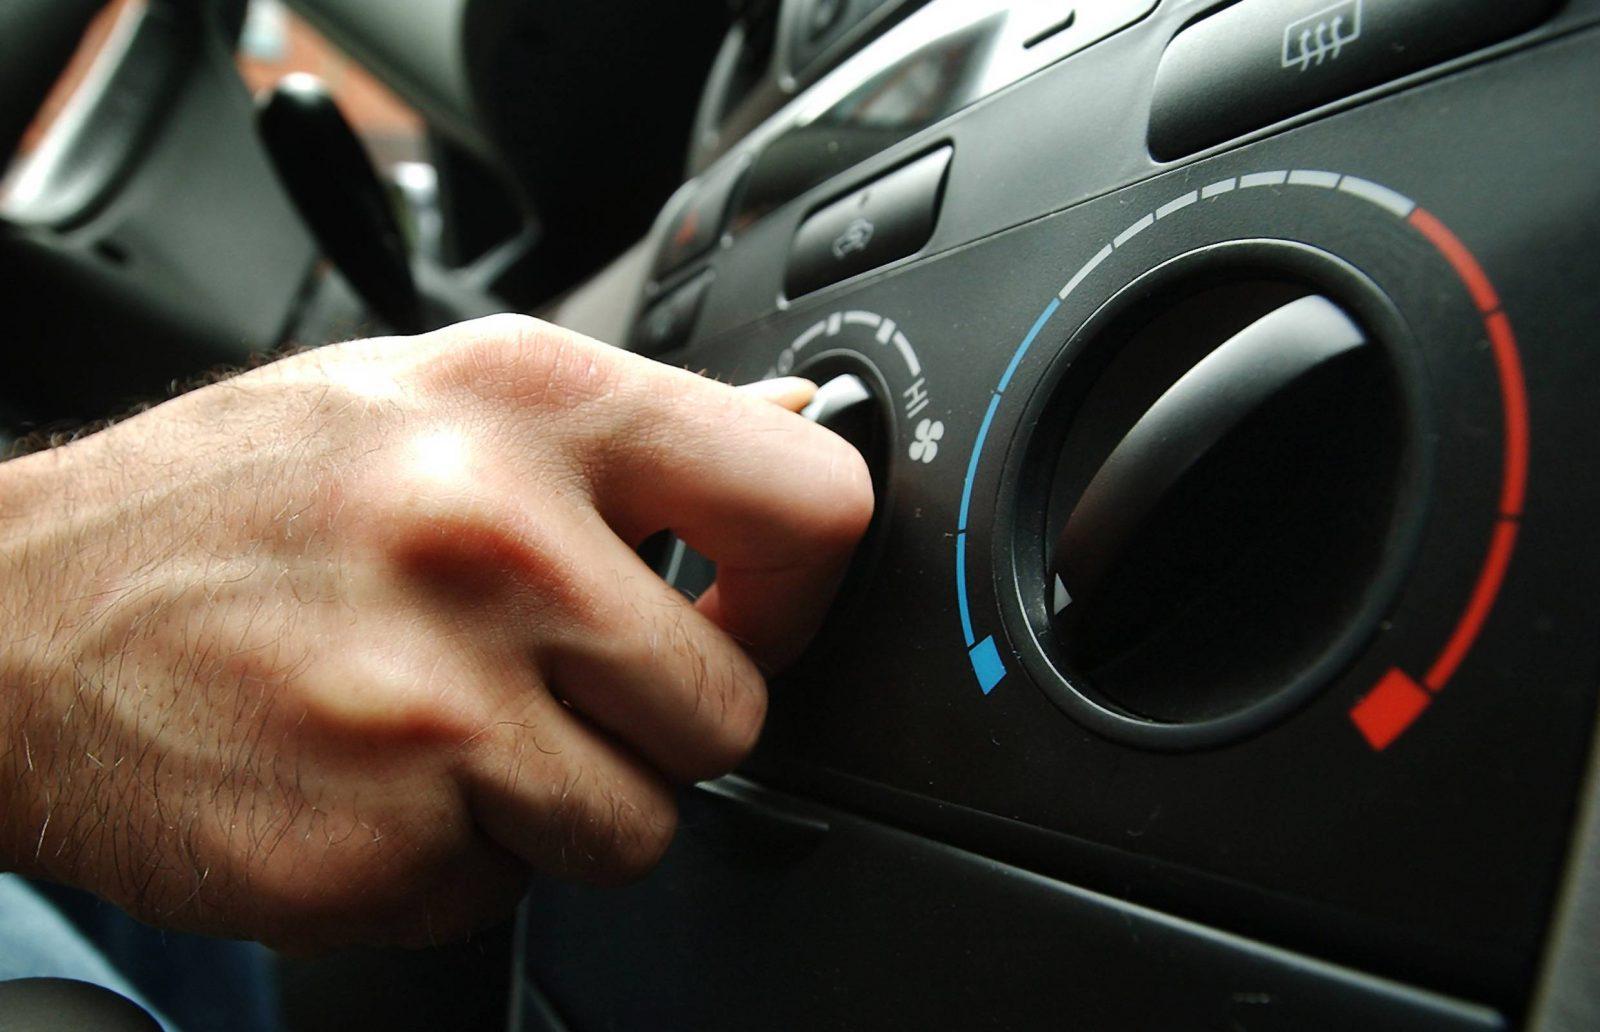 Jangan Sampe Salah! Inilah 9 Tips Rawat AC Mobil yang Benar dan Efektif 